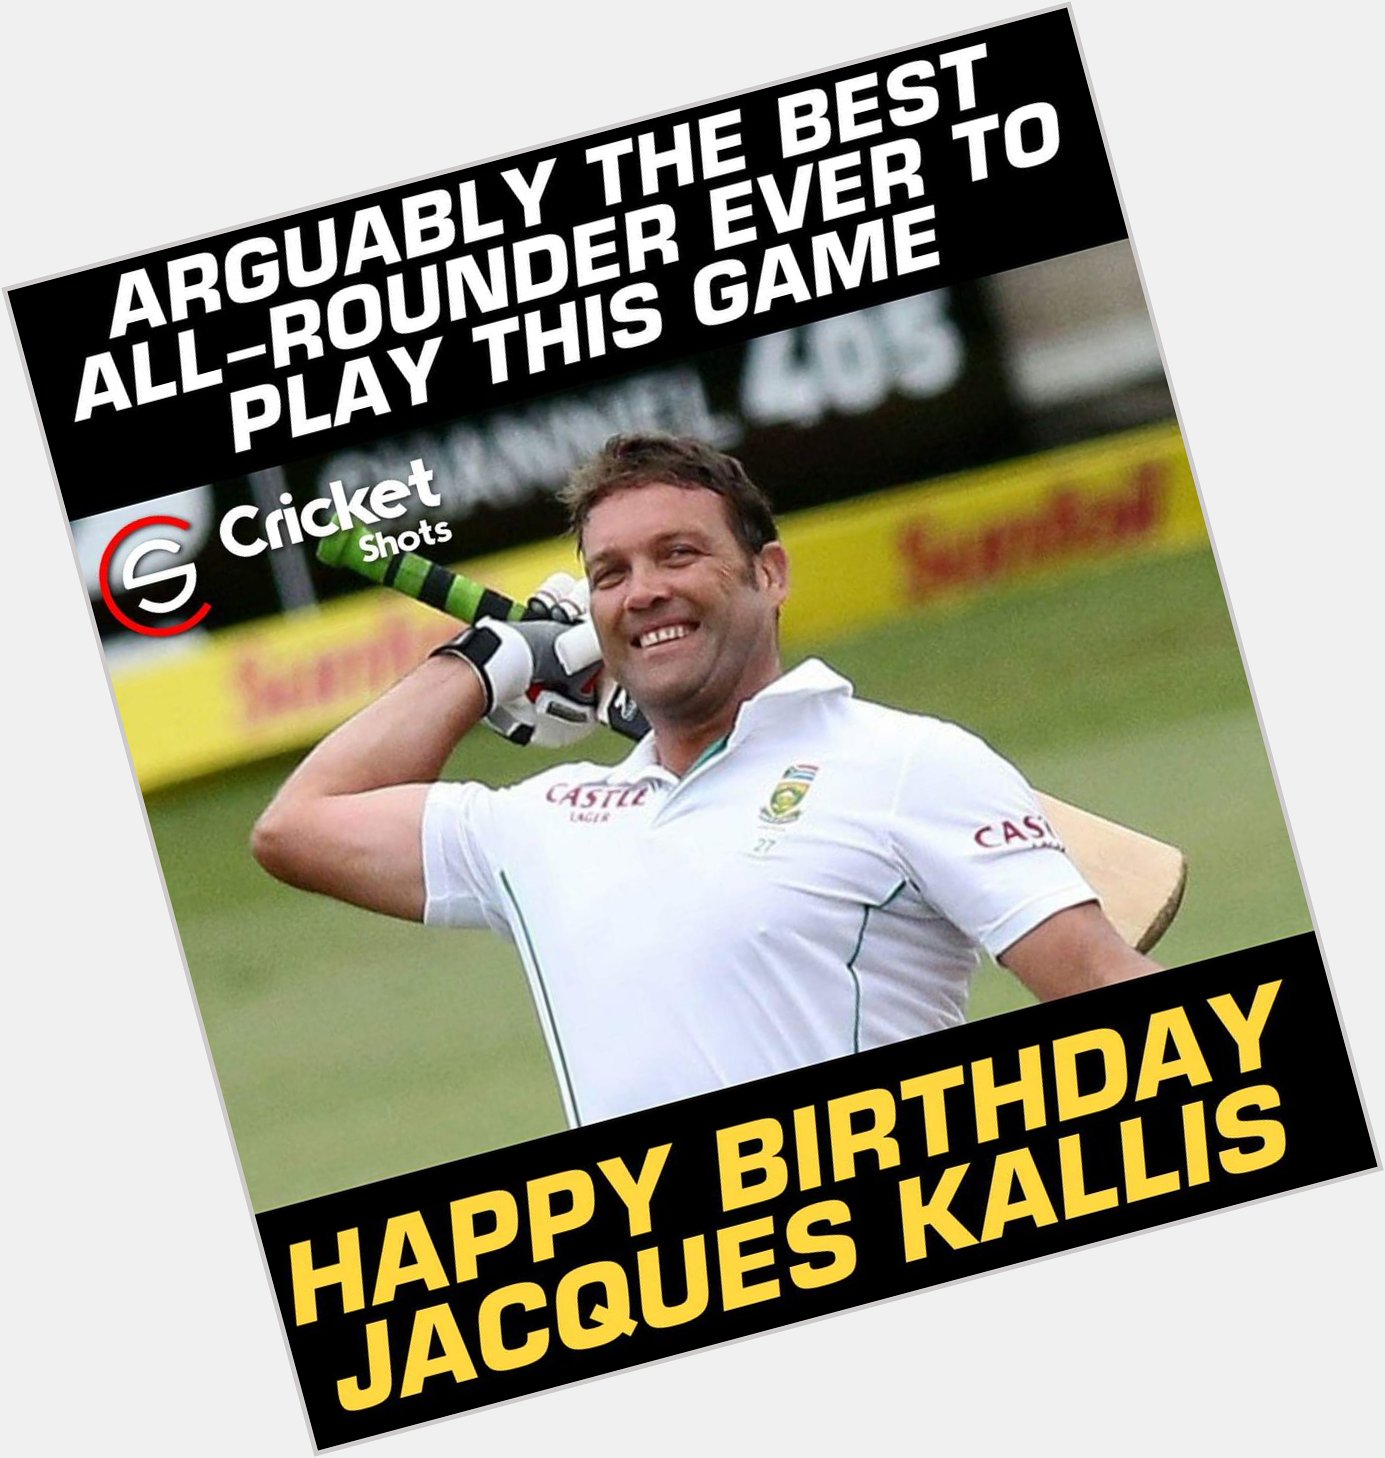 Happy Birthday to Jacques Kallis!! 